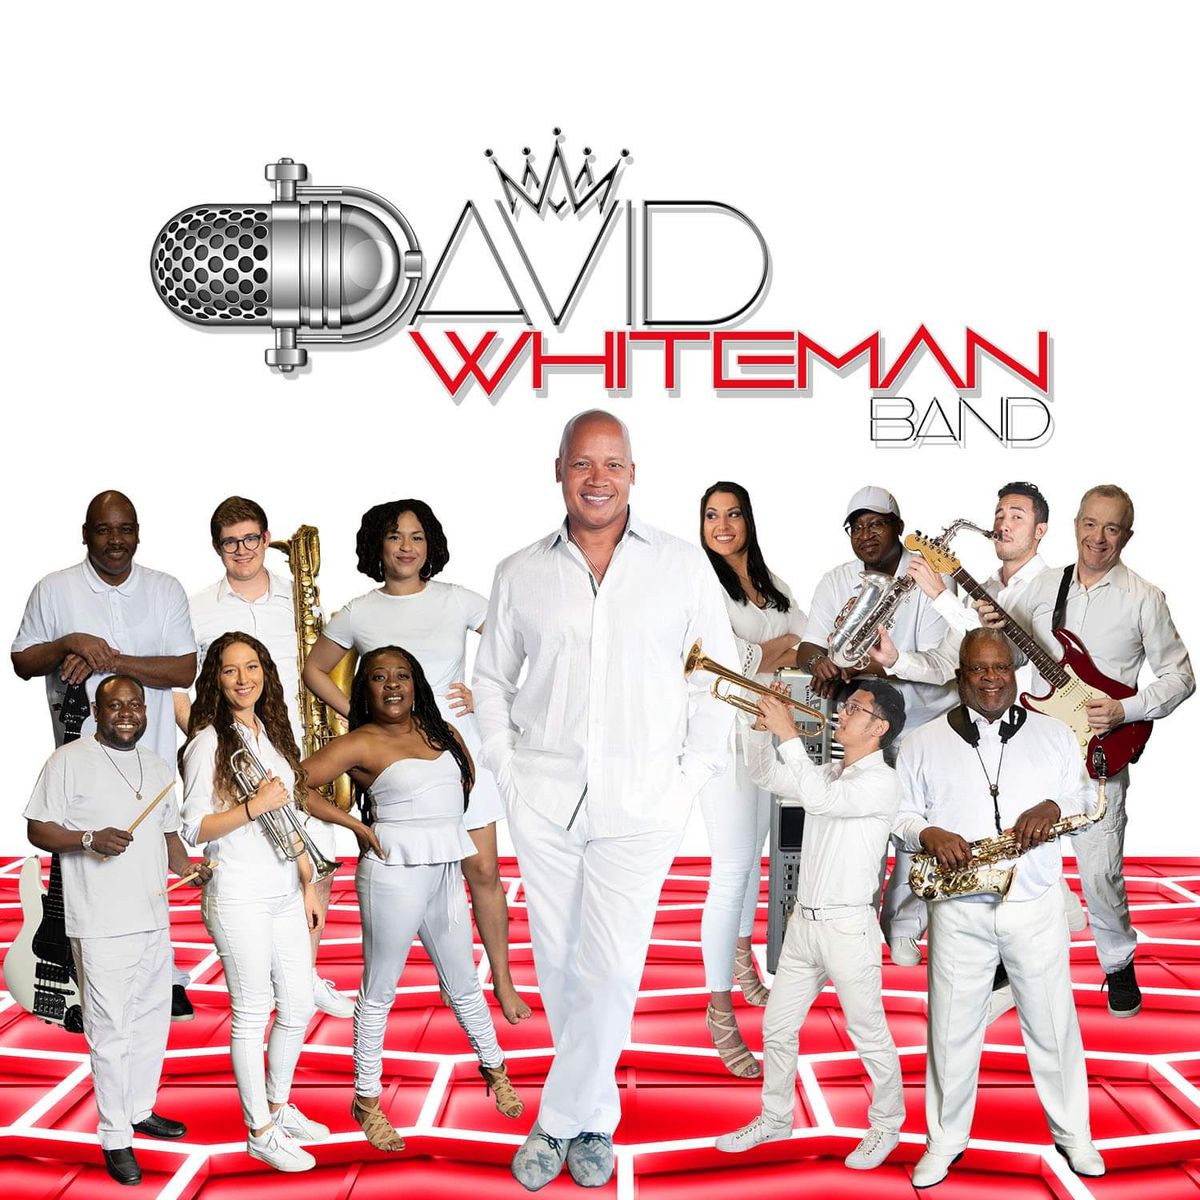 DAVID WHITEMAN Band at The Freeman ... Episode 4